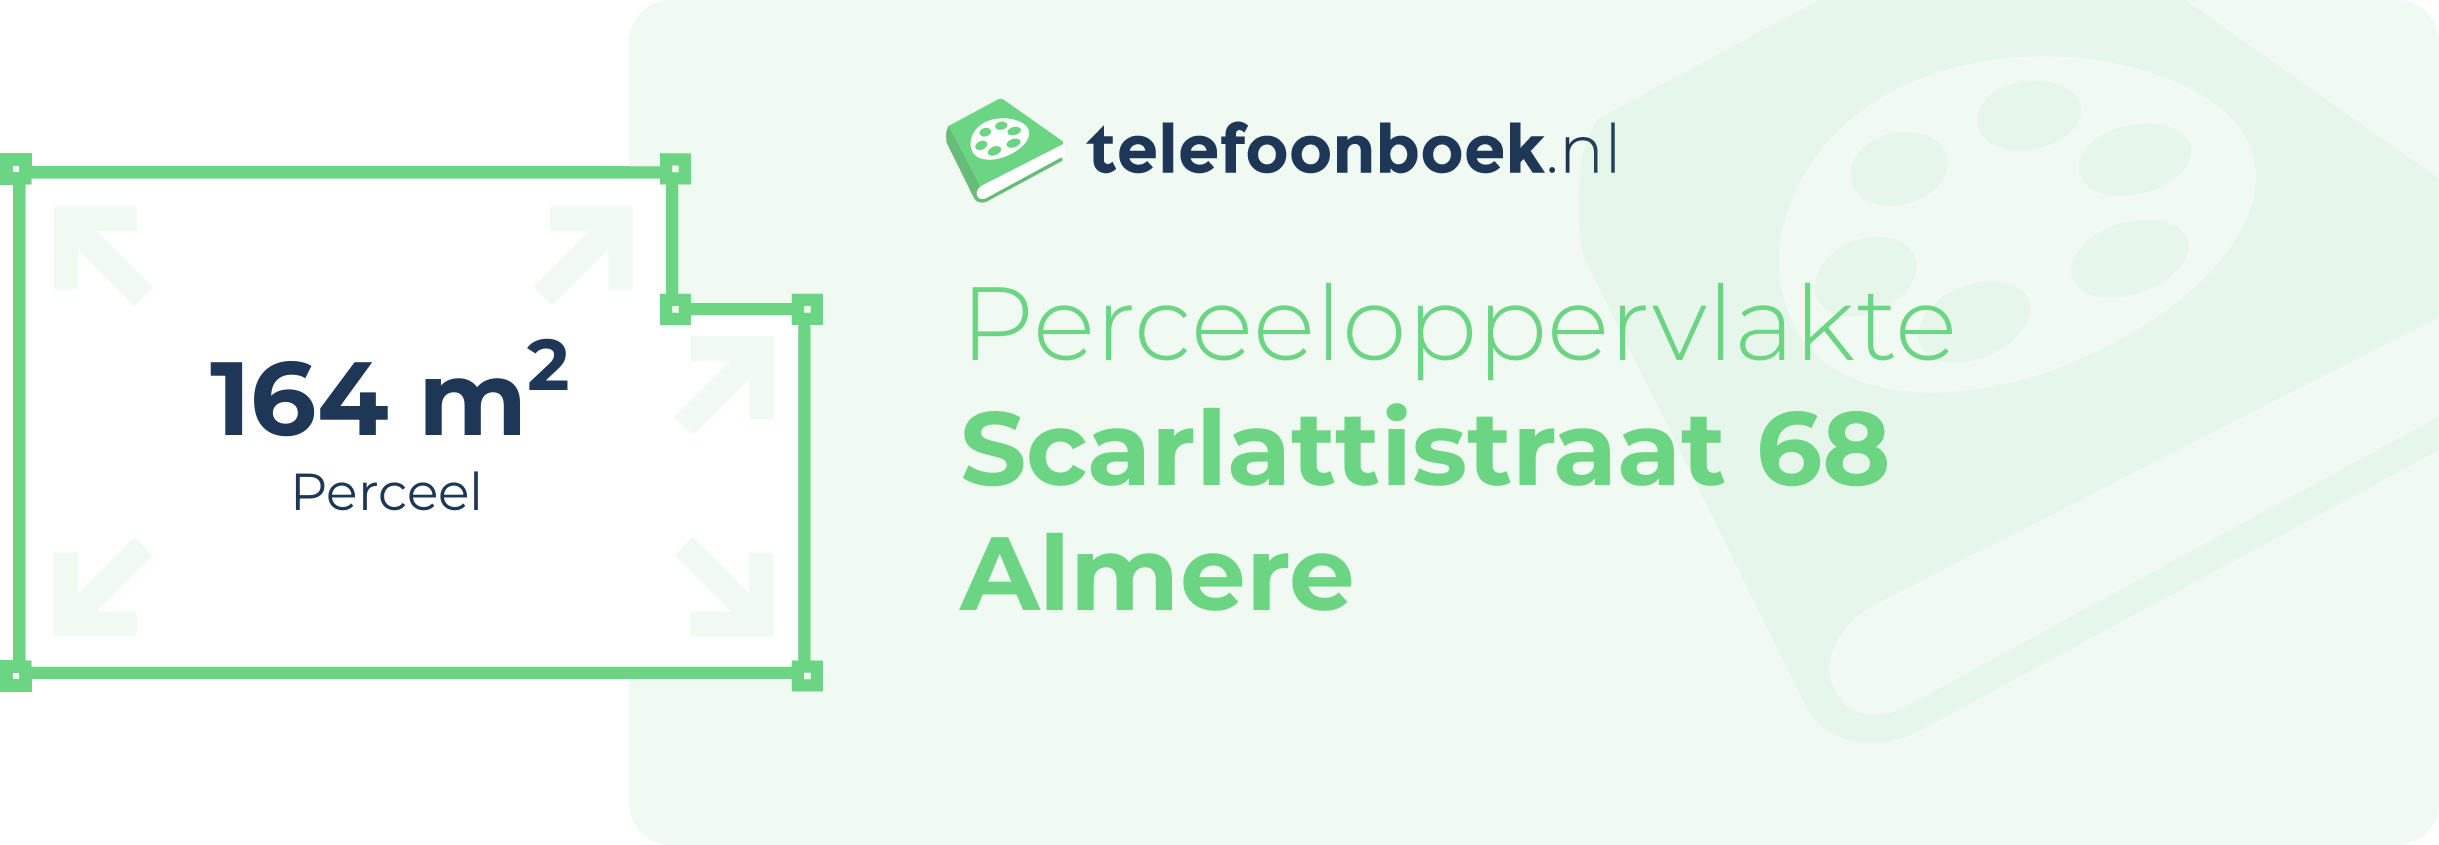 Perceeloppervlakte Scarlattistraat 68 Almere